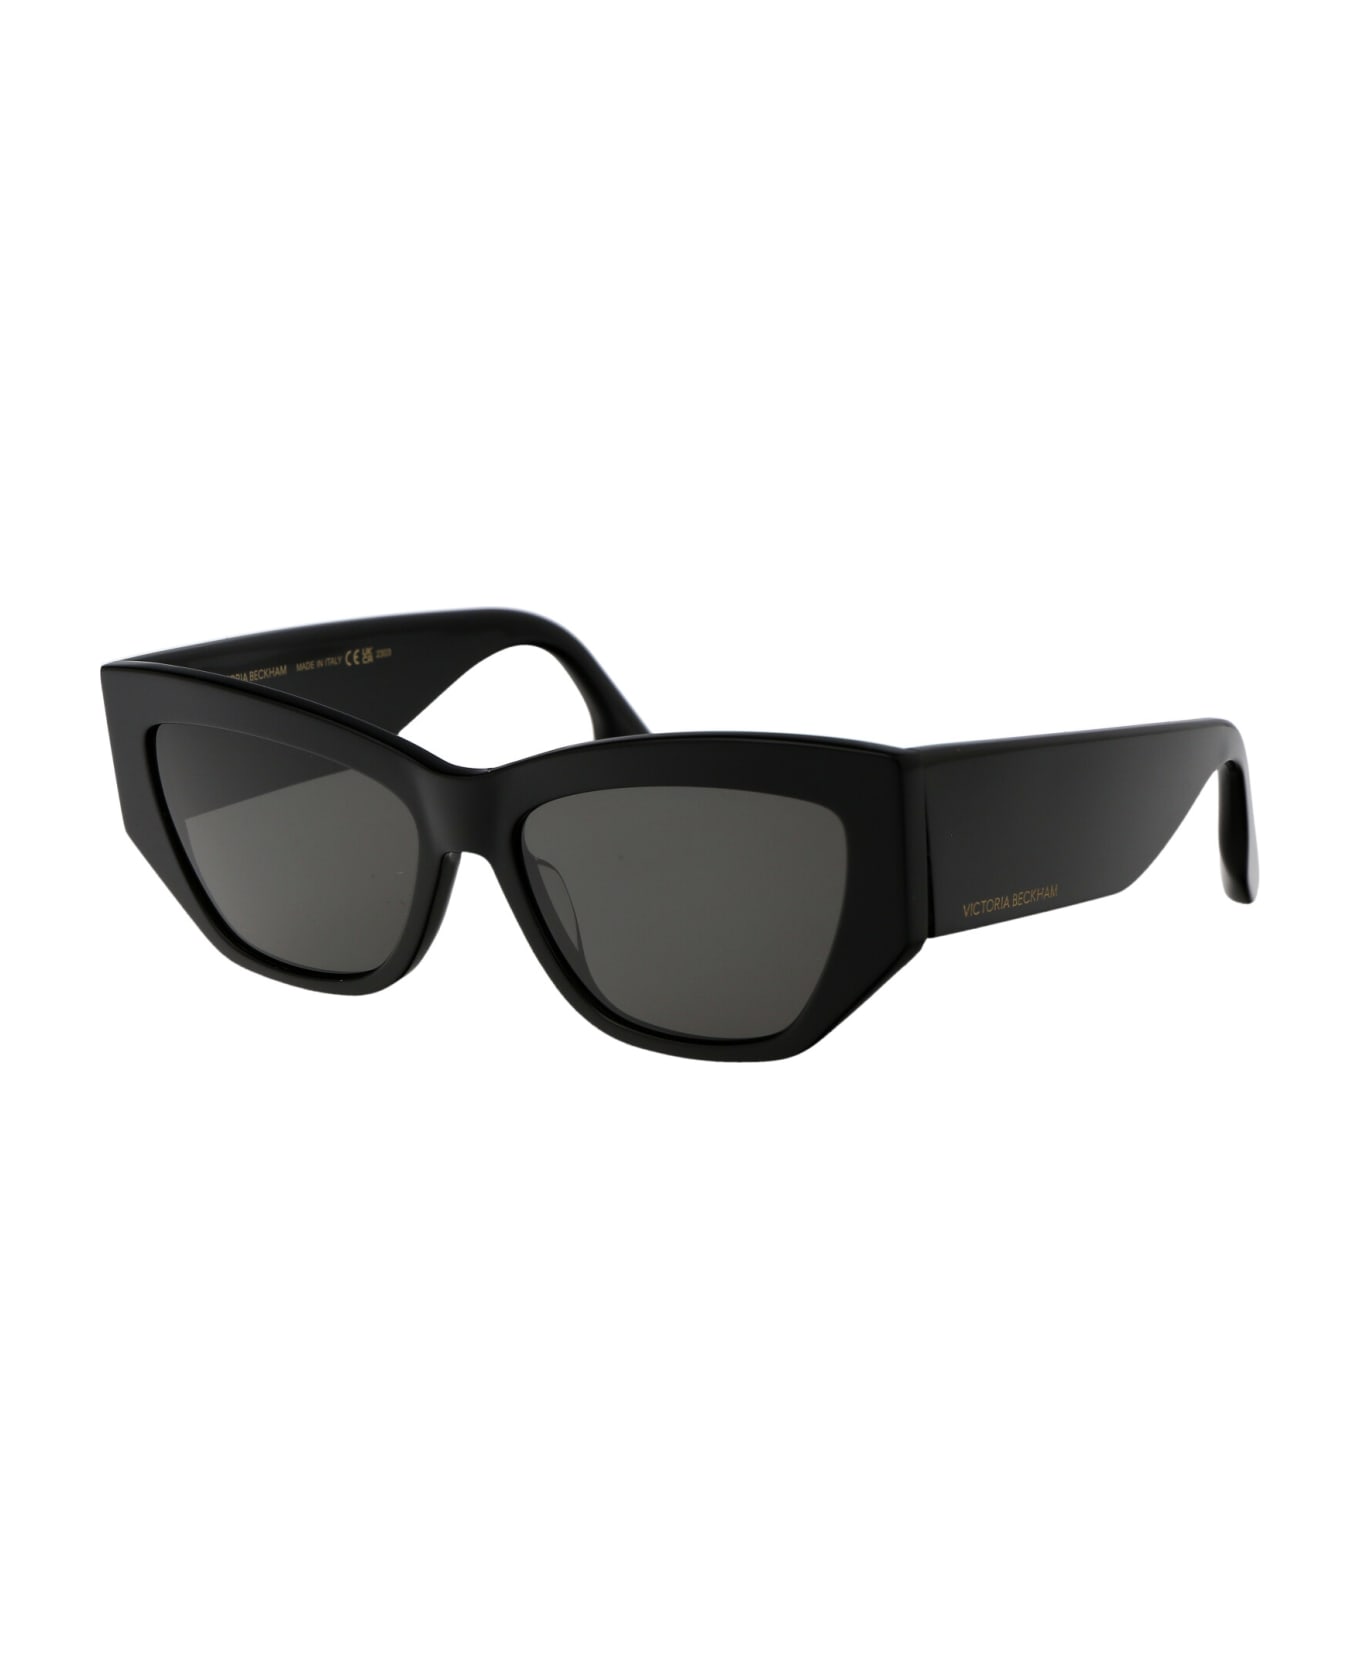 Victoria Beckham Vb645s Sunglasses - 001 BLACK